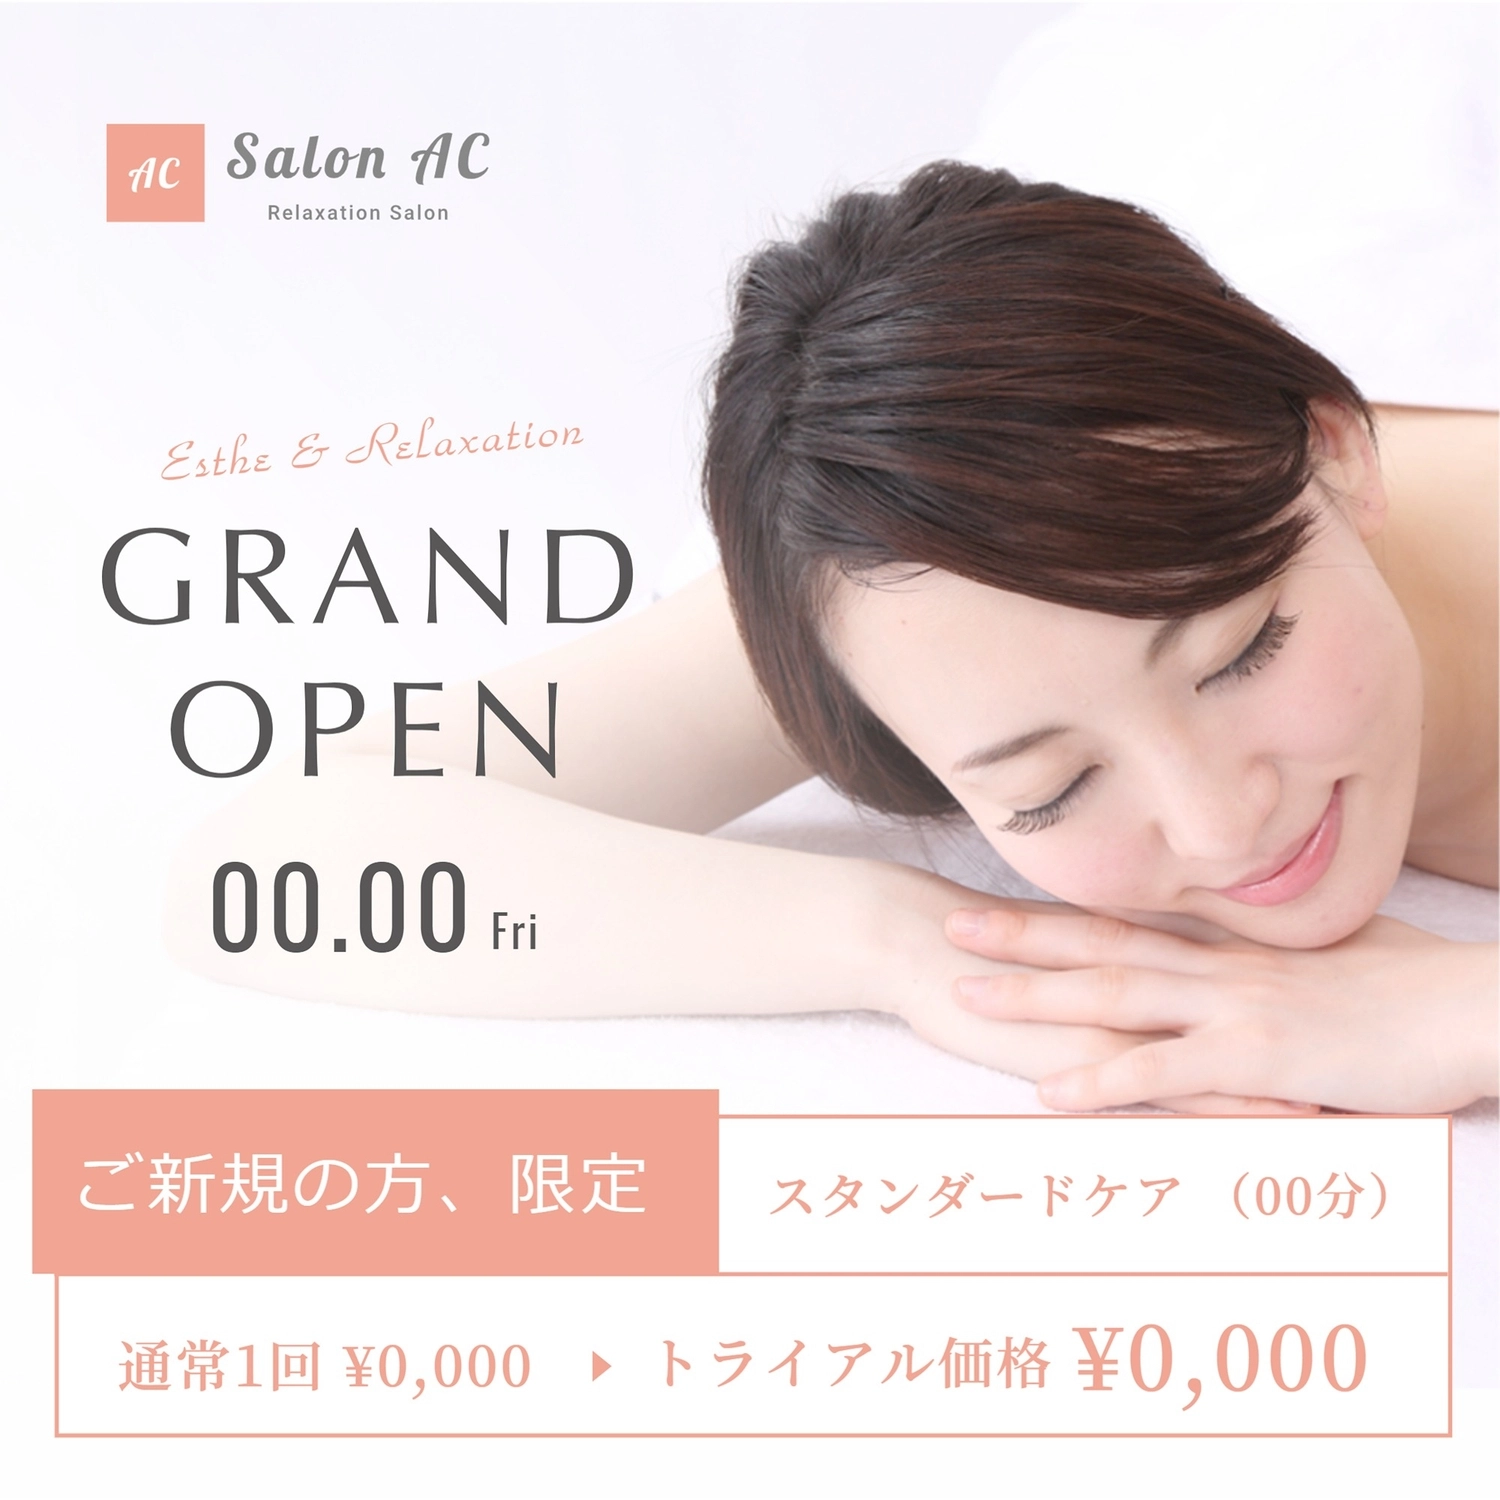 グランドオープンのサロン（日本人女性の写真）, 横書き, 限定, いつもの, Instagram広告テンプレート